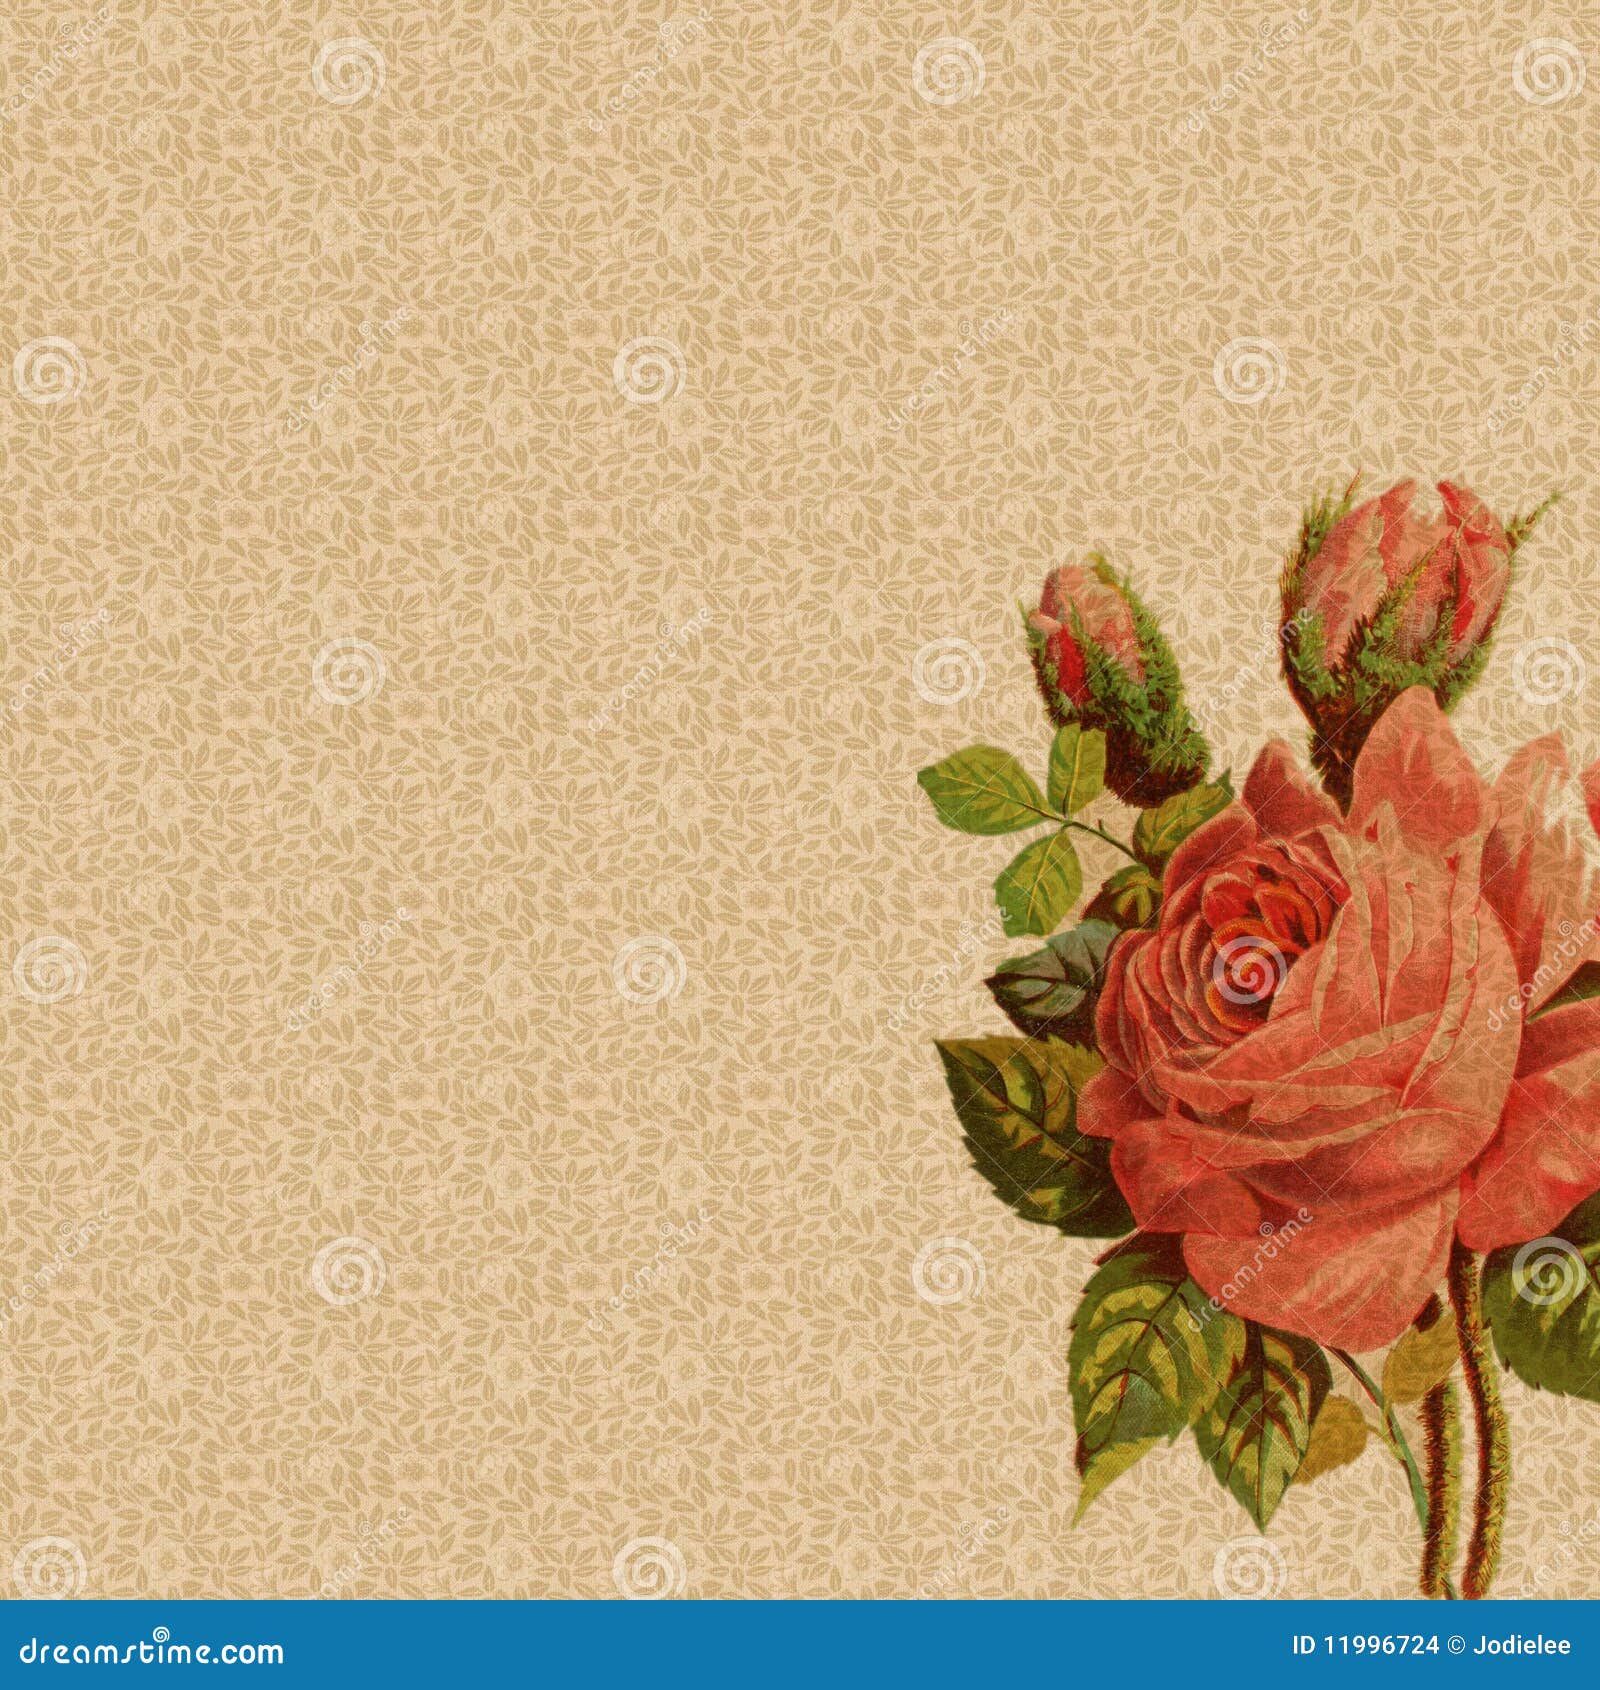 Tổng hợp 444 Background vintage rose Tải ngay để tạo cảm hứng